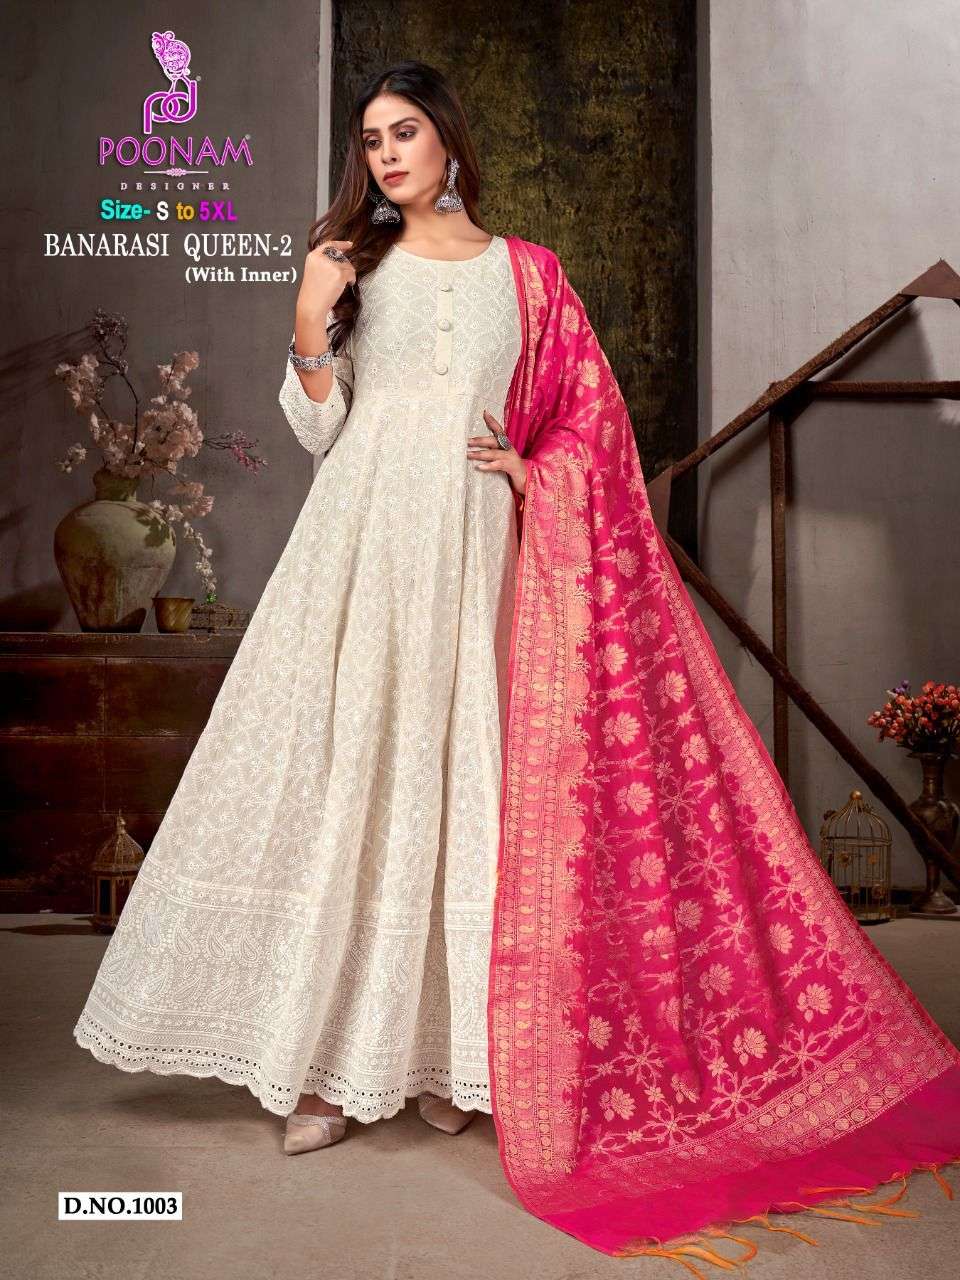 poonam designer banarasi queen vol-2 1001-1006 series fancy gown with dupatta collection surat